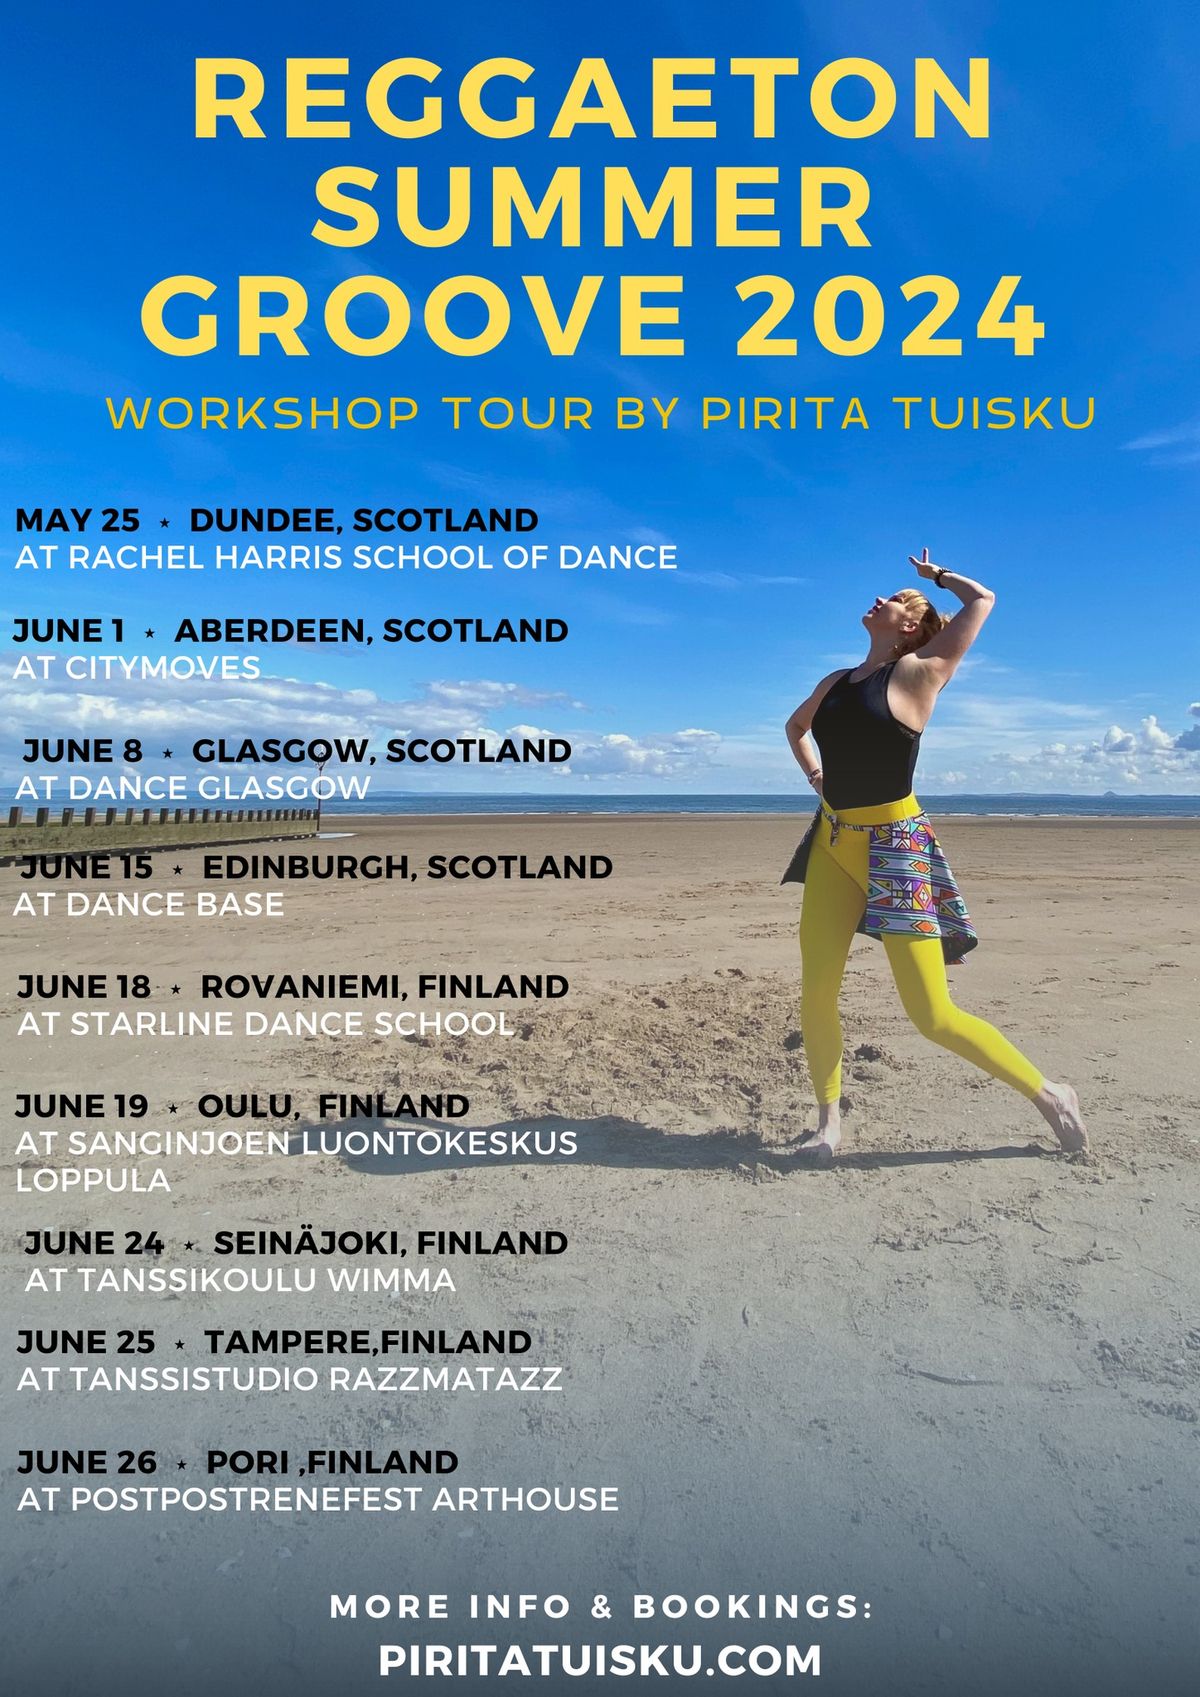 Reggaeton Summer Groove Workshop : EDINBURGH, Scotland